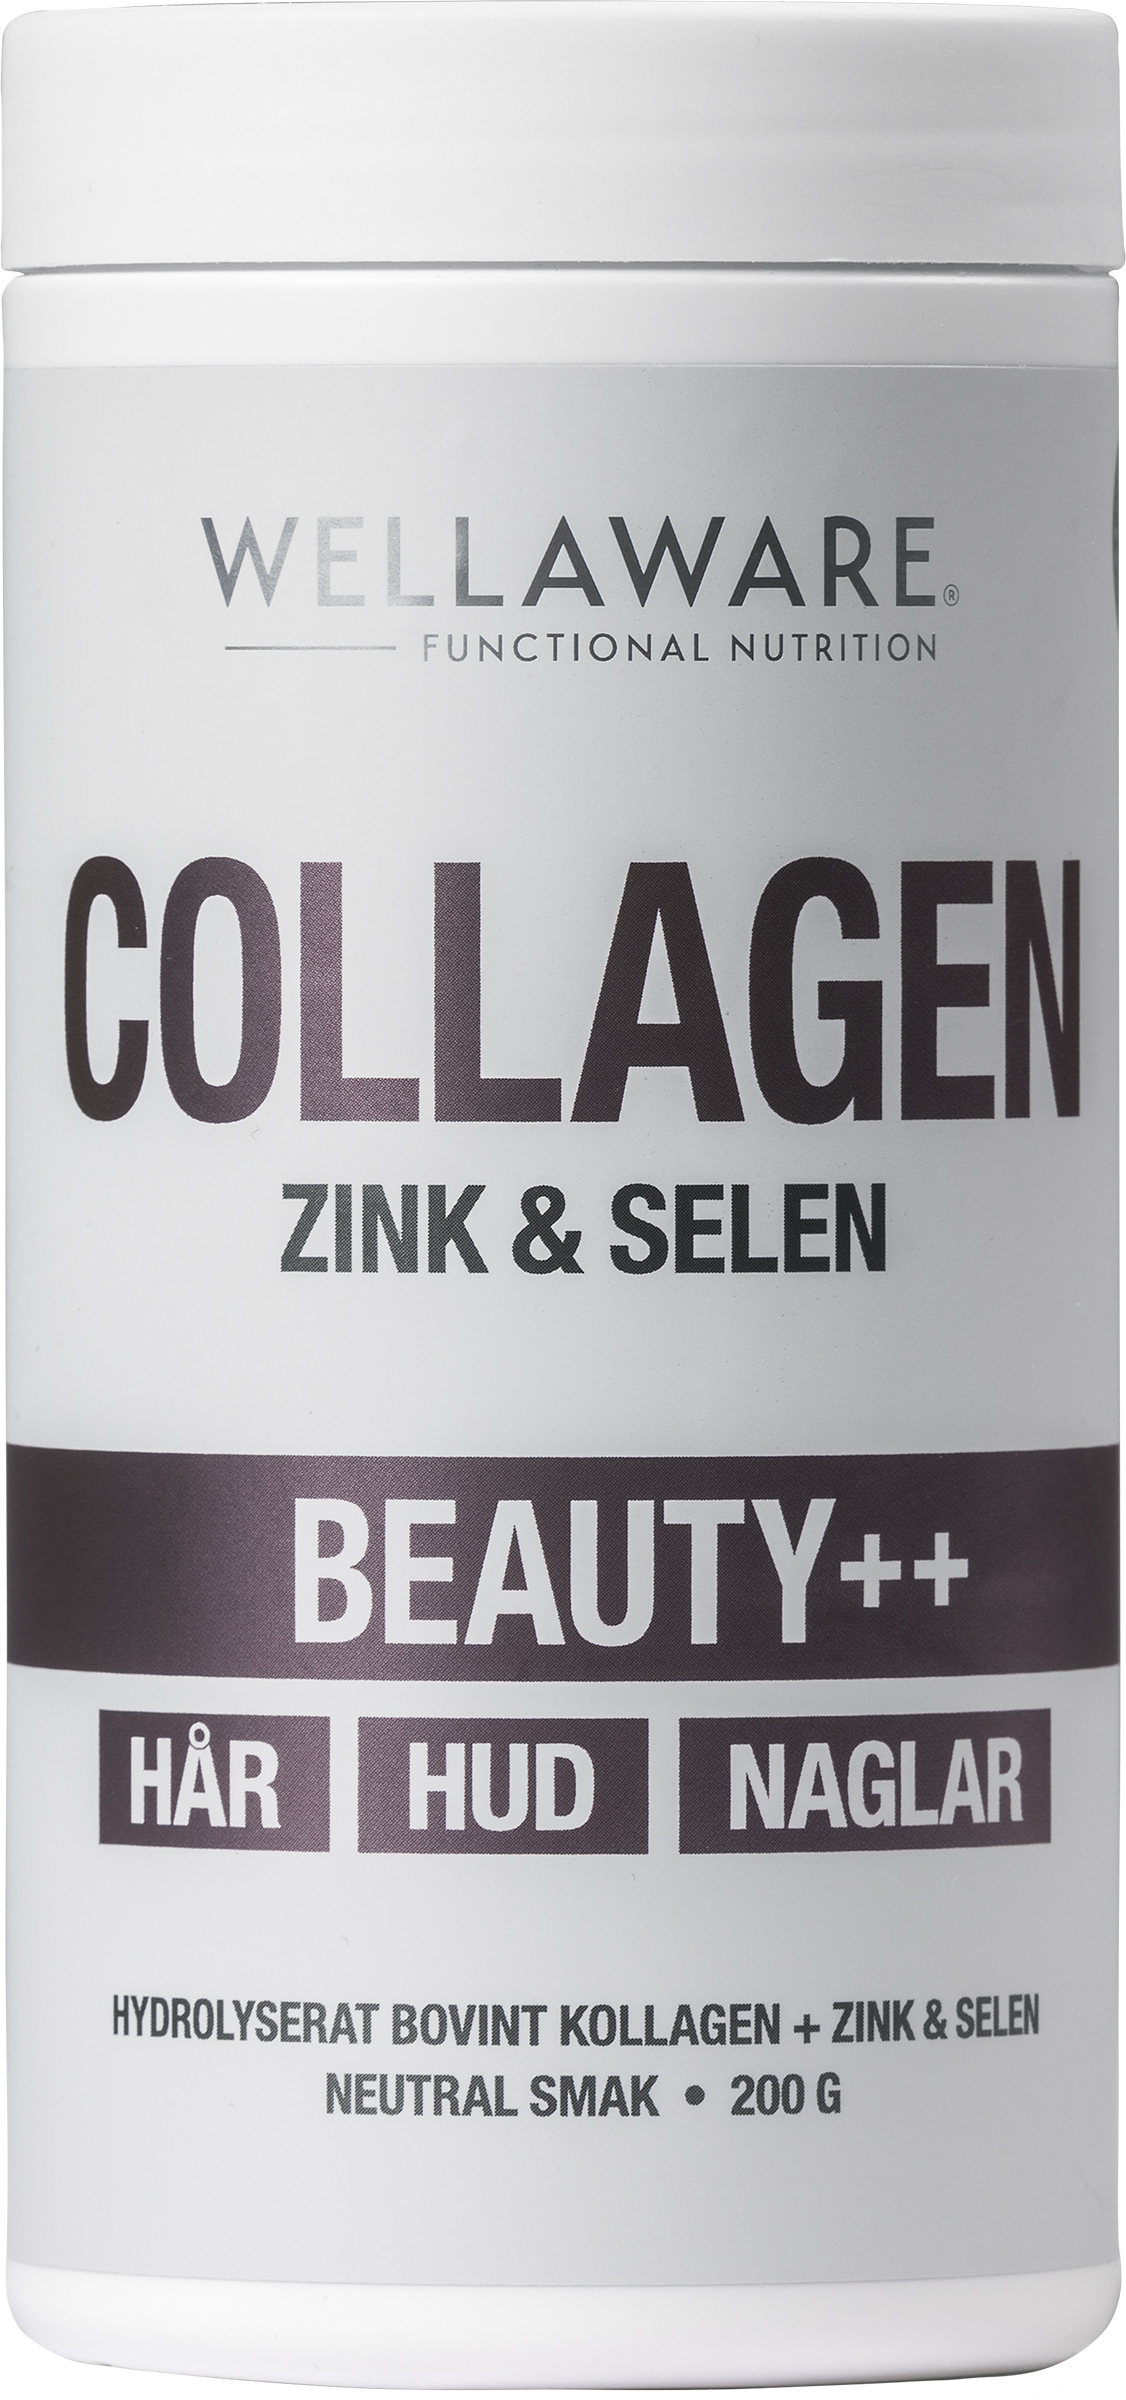 WellAware Collagen Beauty++ Zink & Selen 200 g